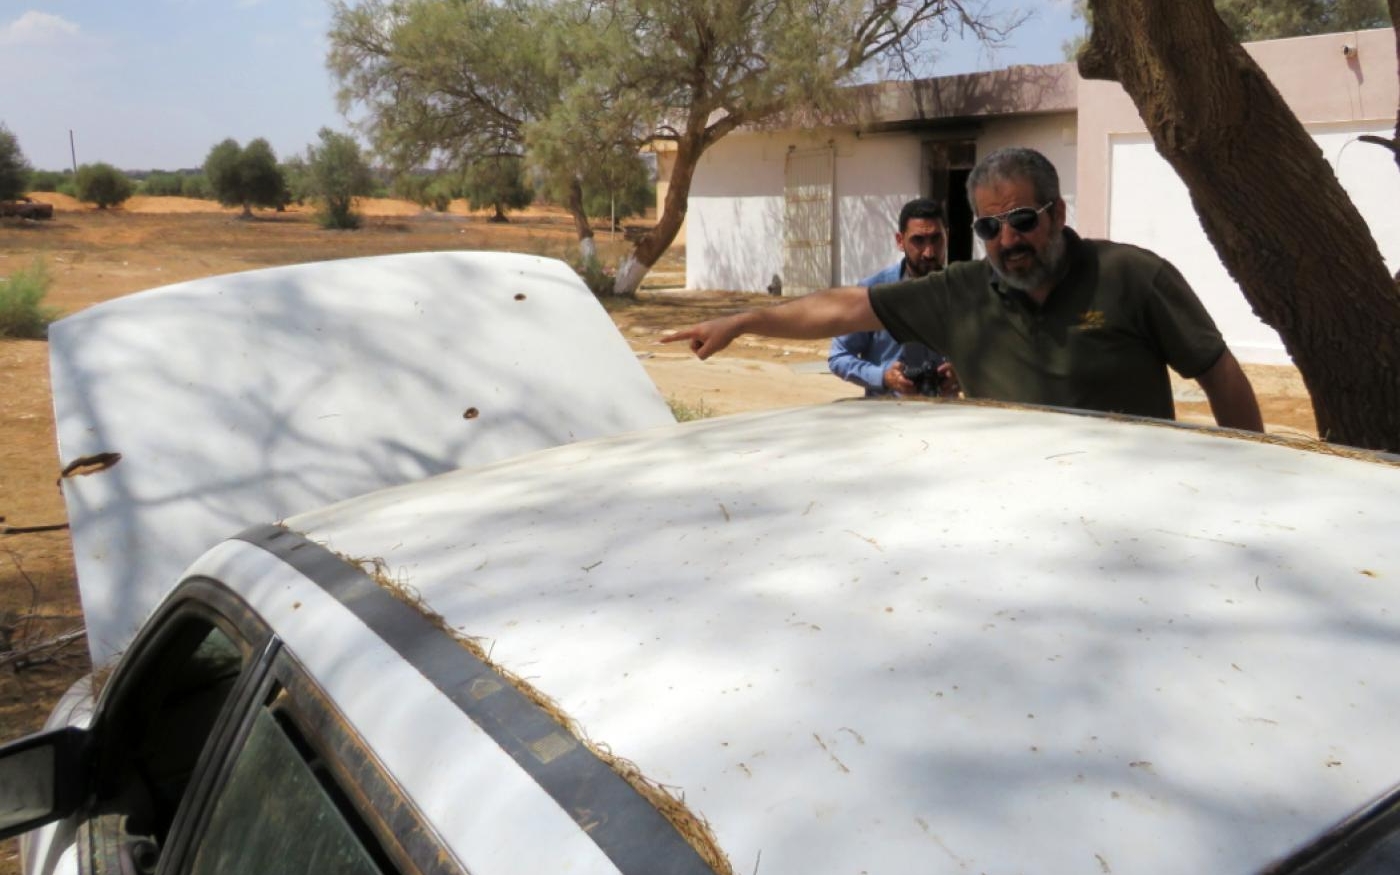 Le maire de Tarhouna, Mohammed Ali al-Kosher, montre des impacts de balles sur une voiture abandonnée (MEE/Daniel Hilton)